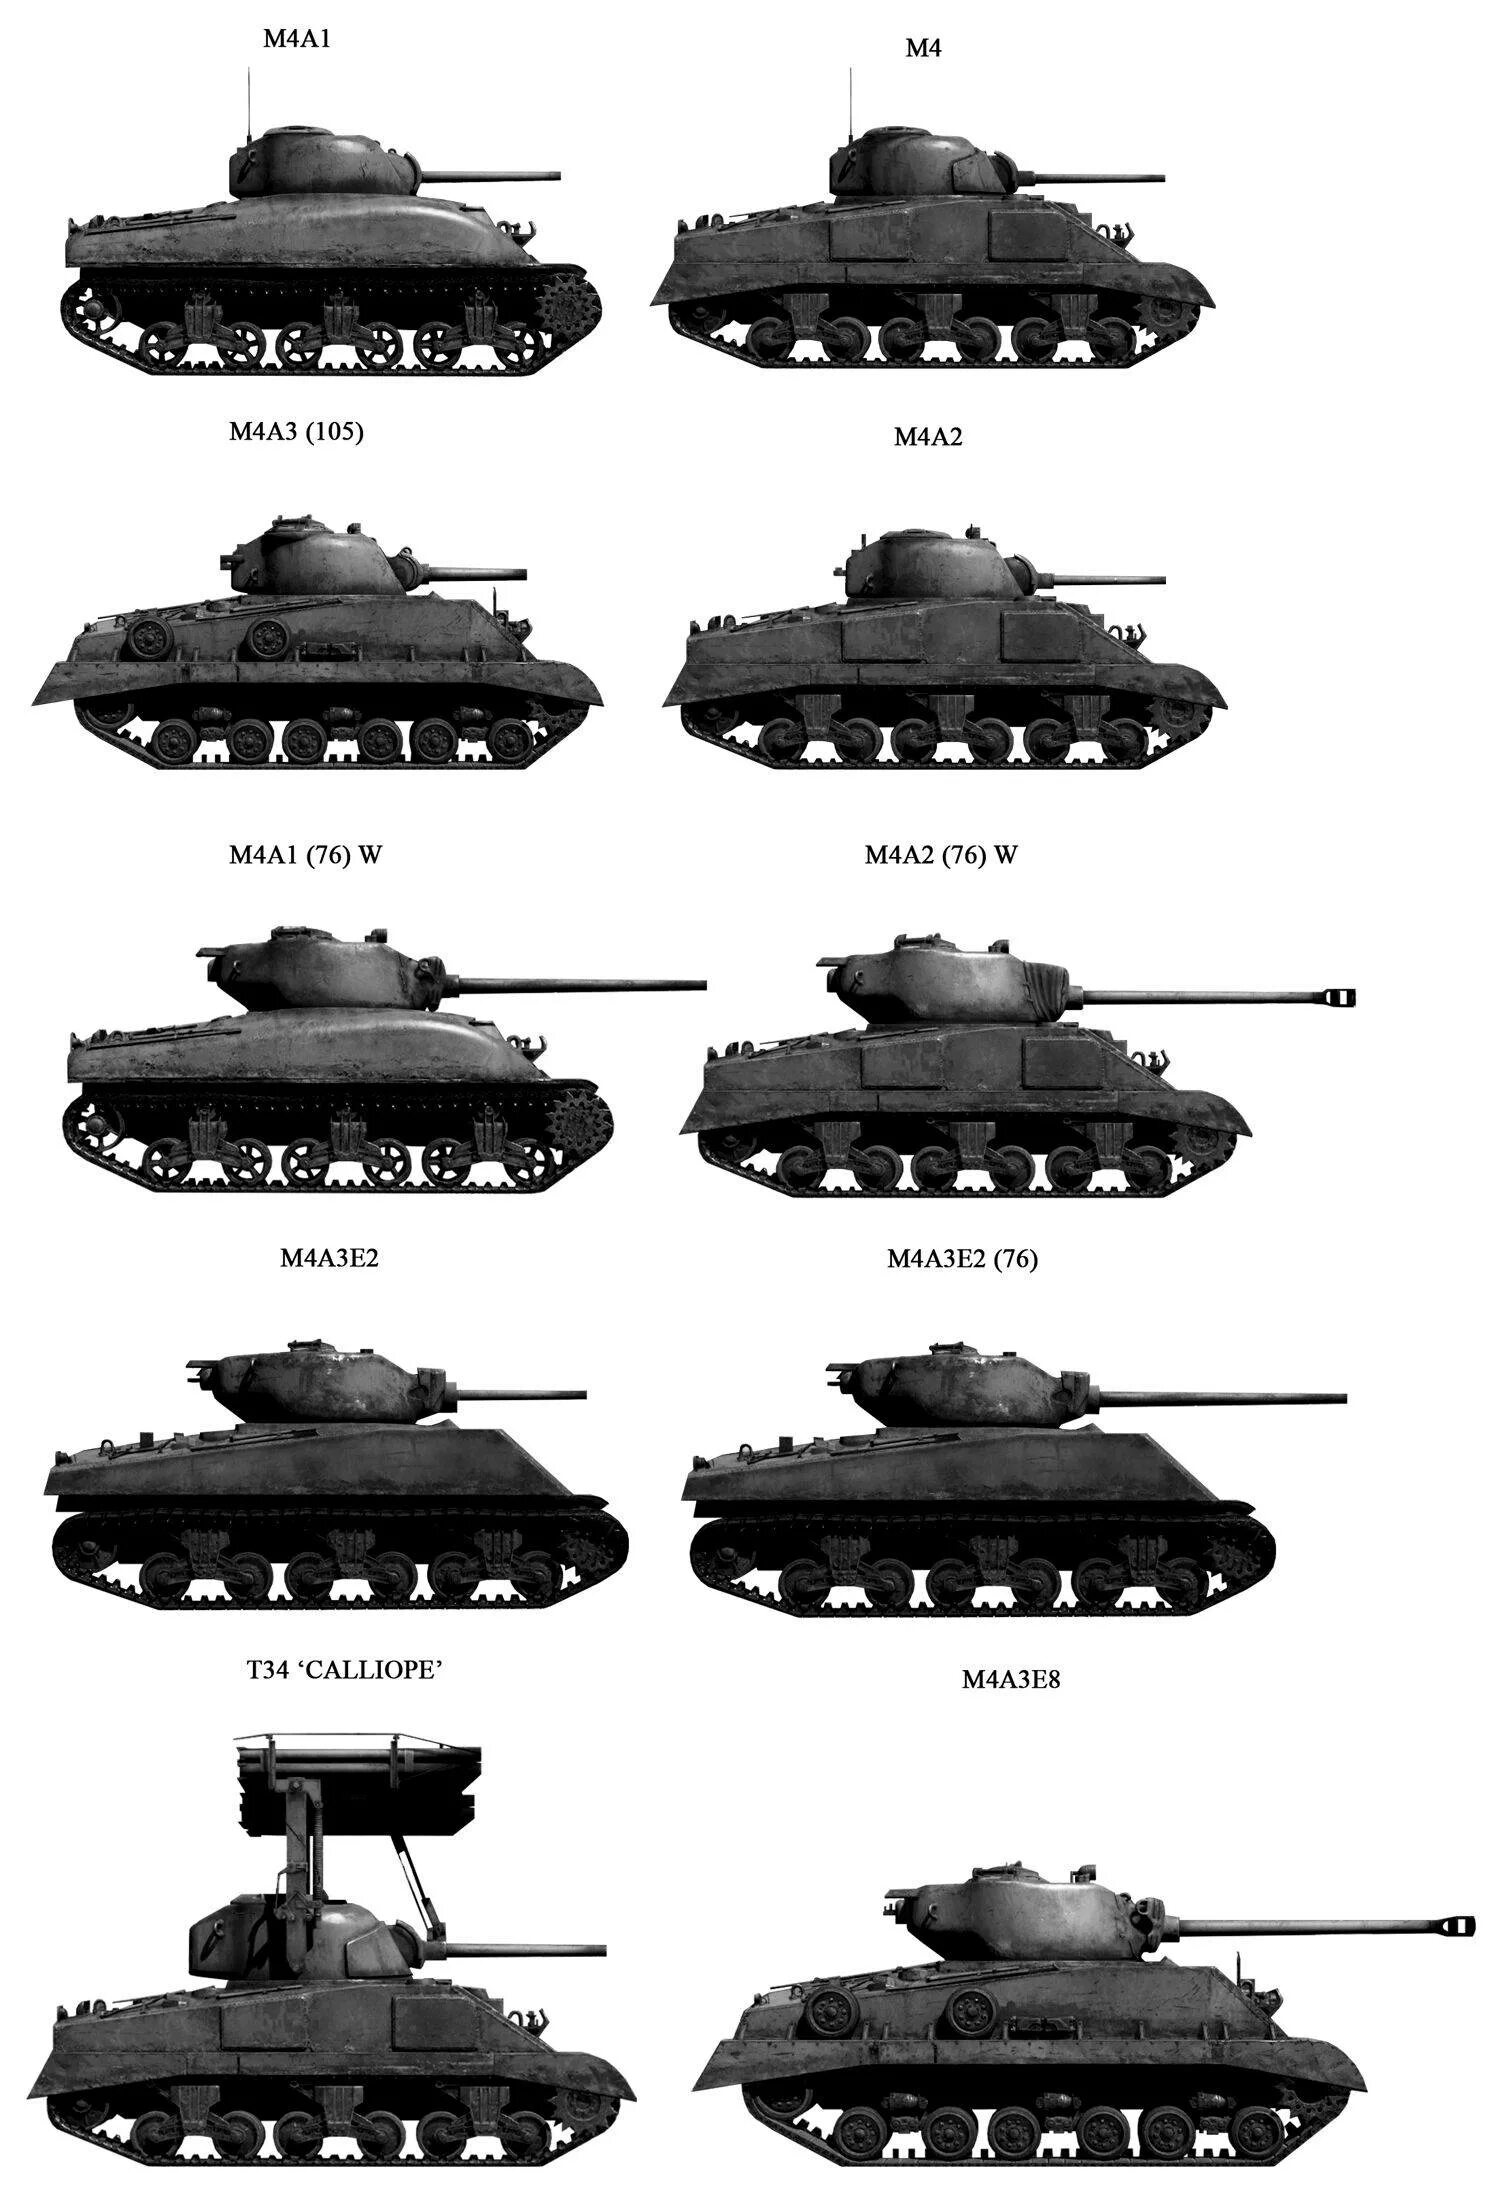 Танки 2 мировой Шерман. Танк м4 Шерман. Танк м4 Шерман модификации. Американский танк второй мировой войны Шерман.